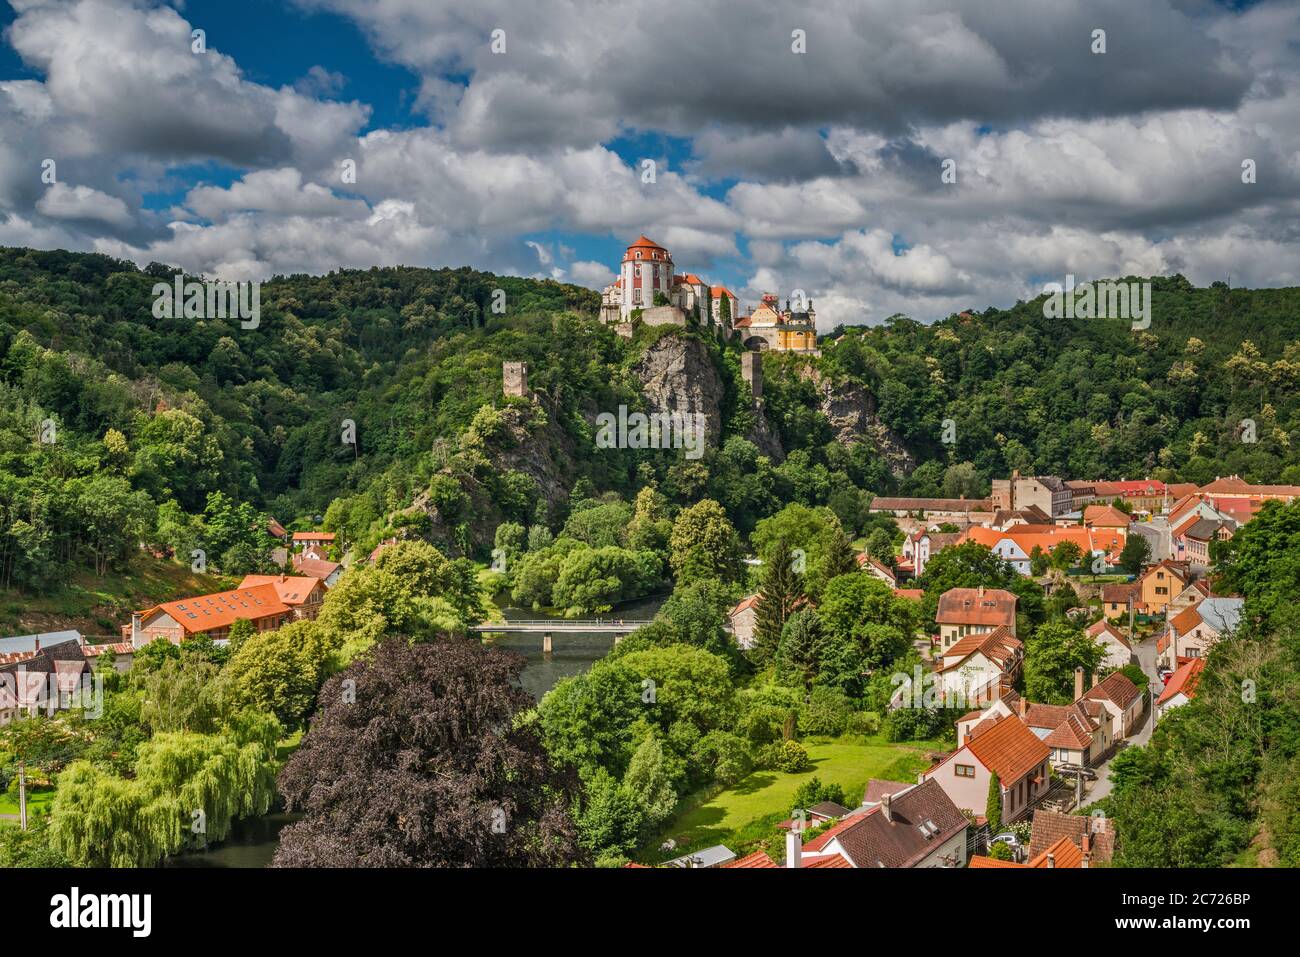 Castle over town of Vranov nad Dyjí, Dyje river valley, Moravia, South Moravian Region, Czech Republic Stock Photo